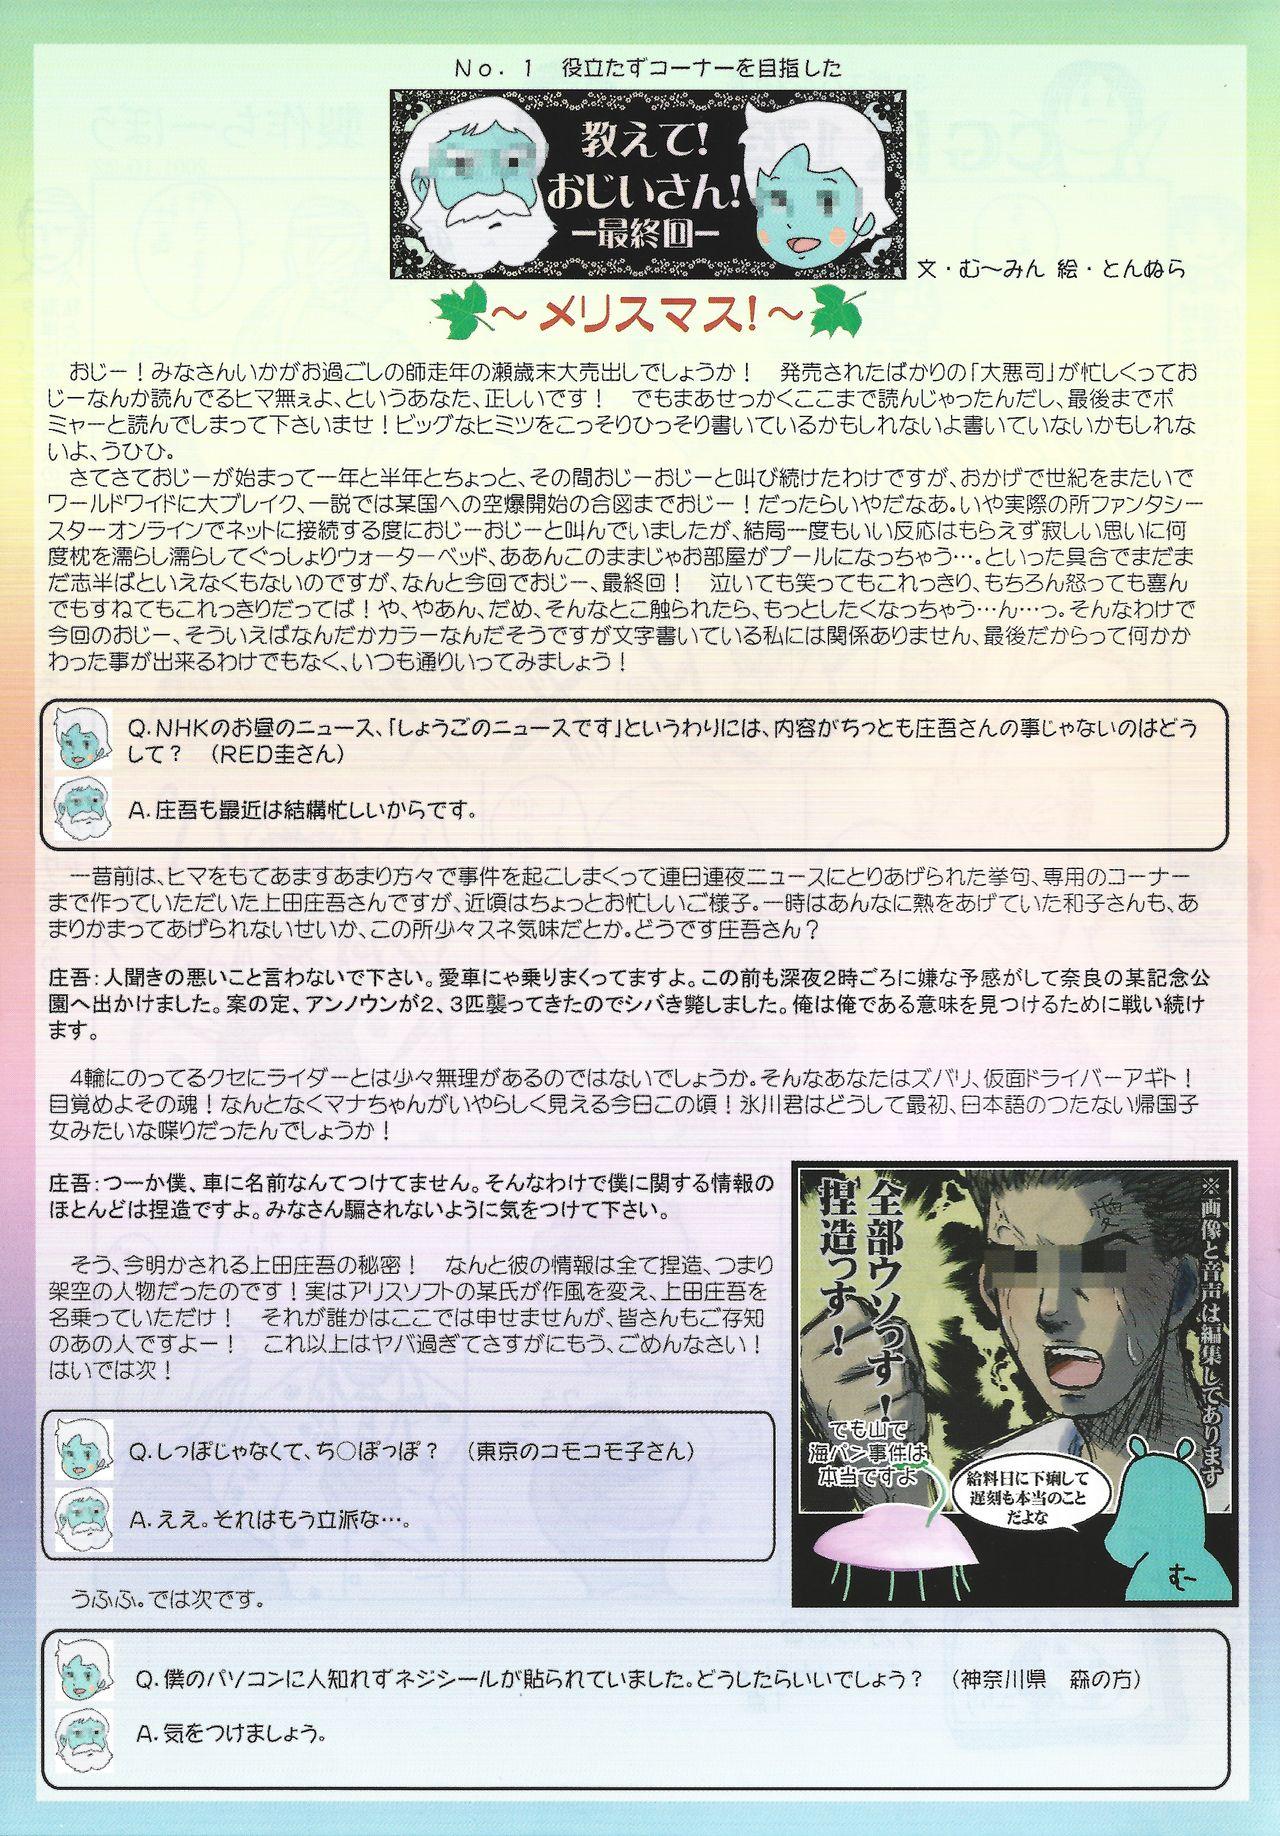 Arisu no Denchi Bakudan Vol. 20 16